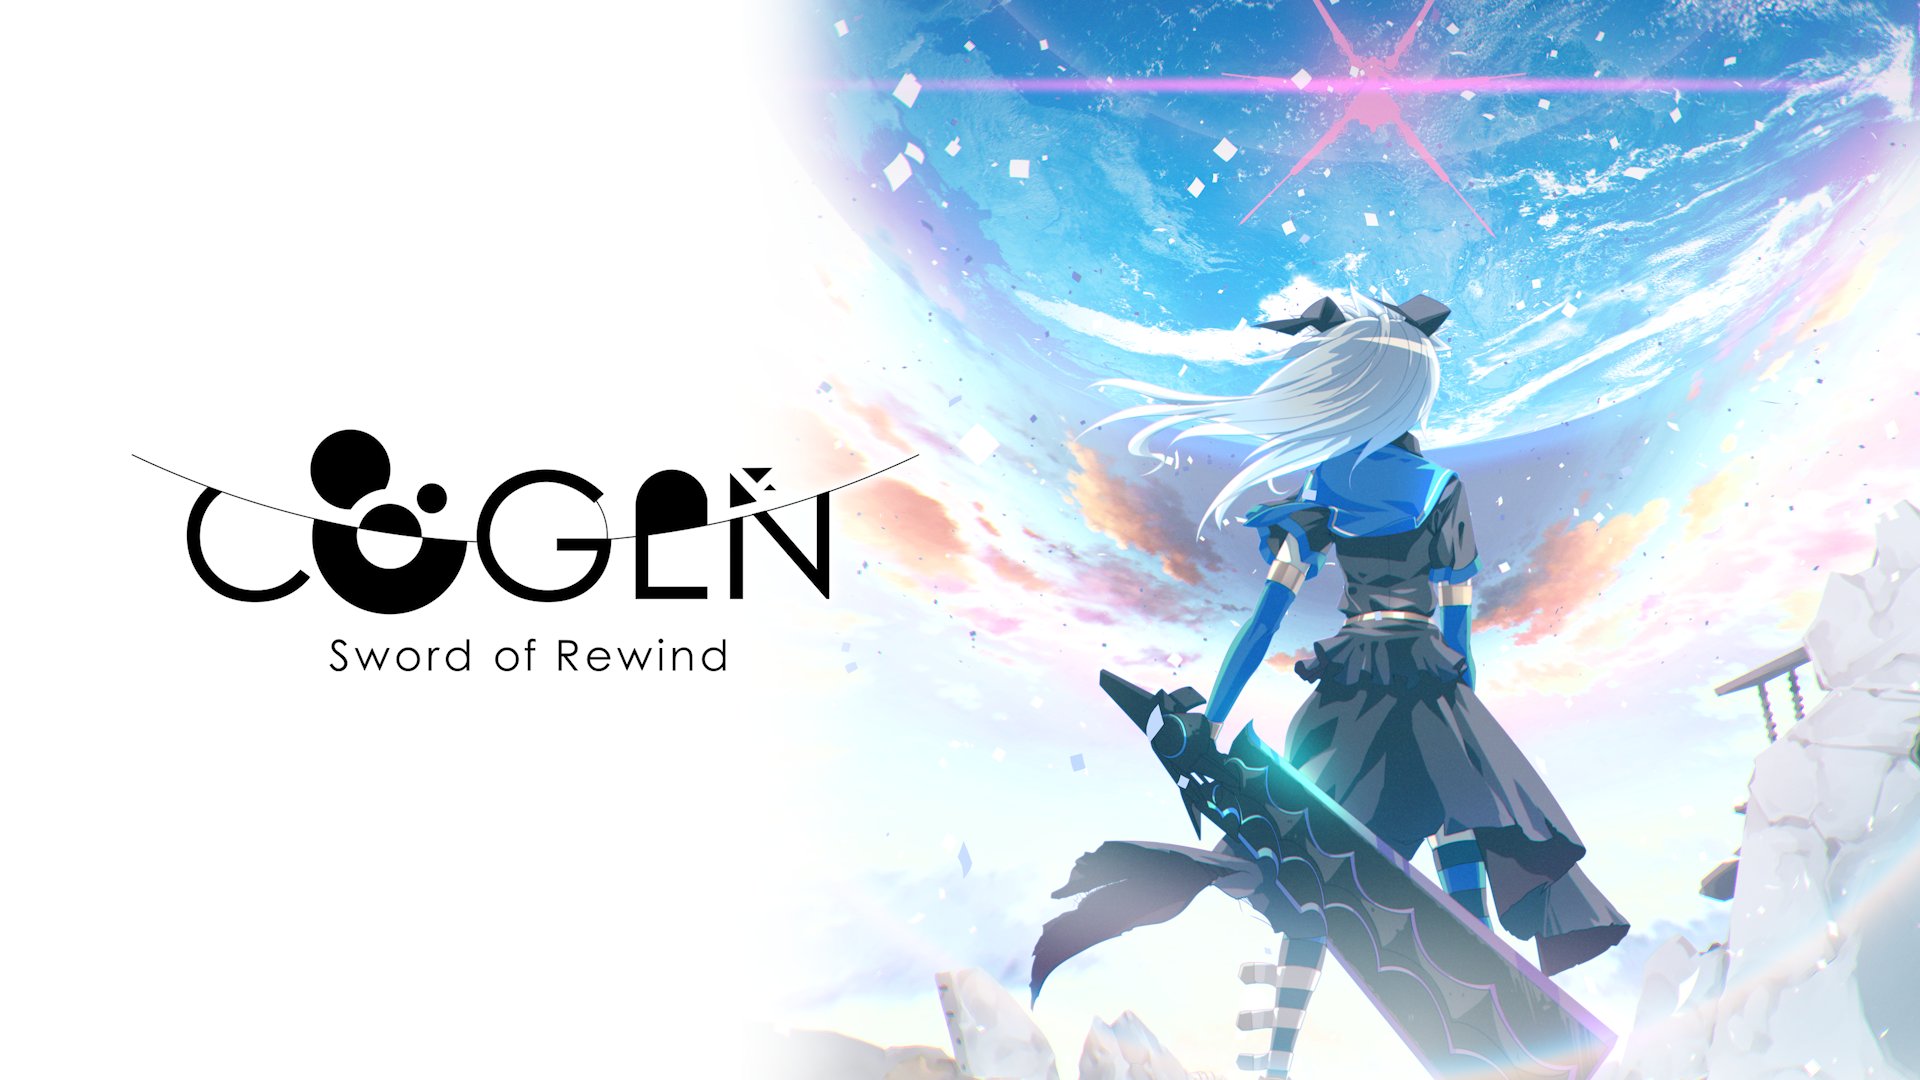 Video Game Cogen: Sword of Rewind HD Wallpaper | Background Image